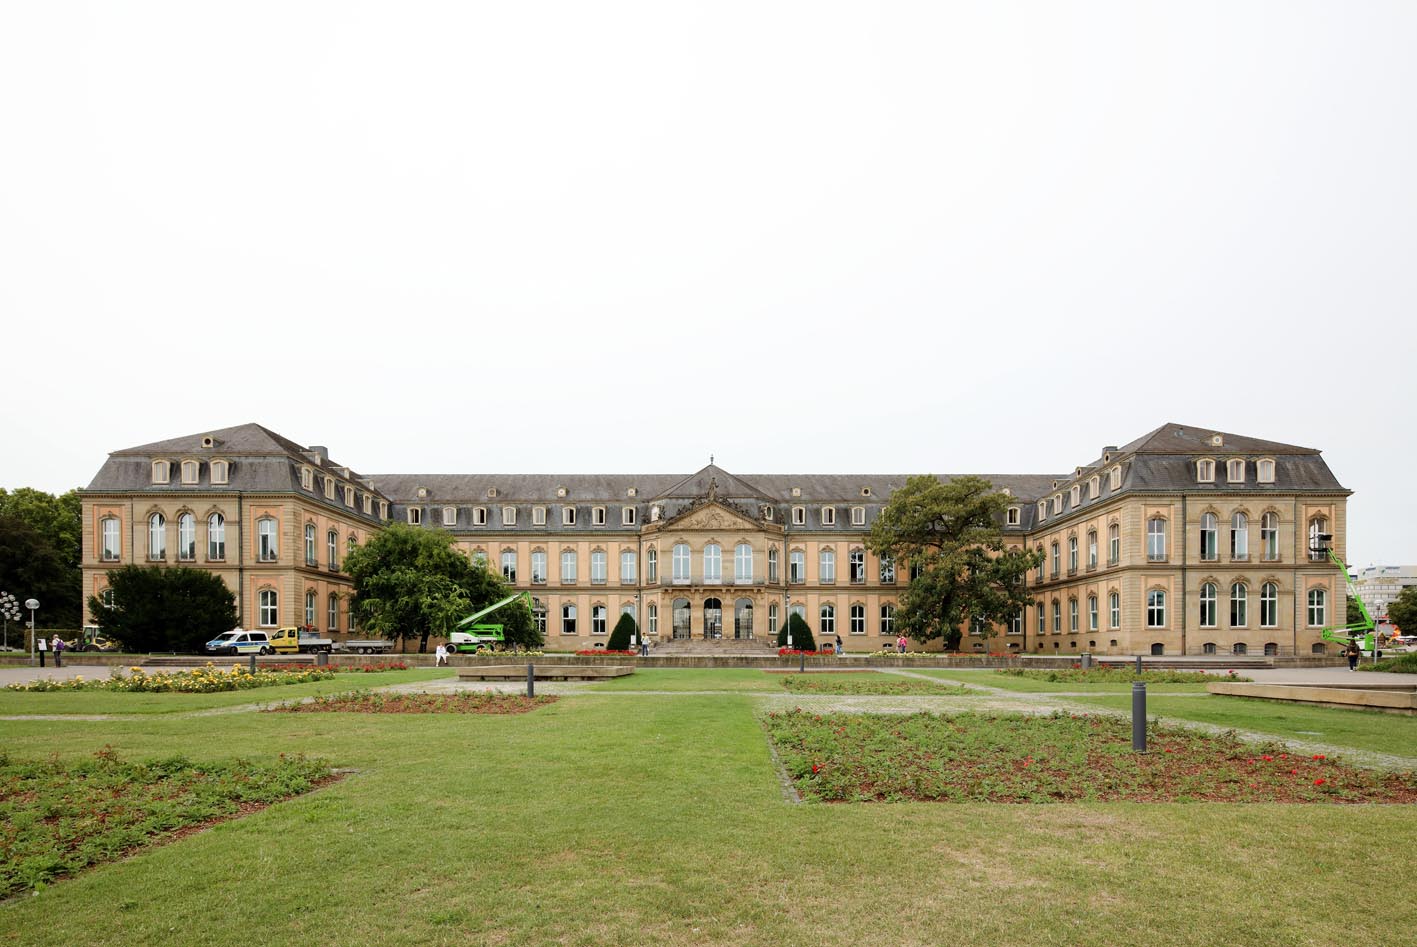 Neues Schloss Palace in Stuttgart